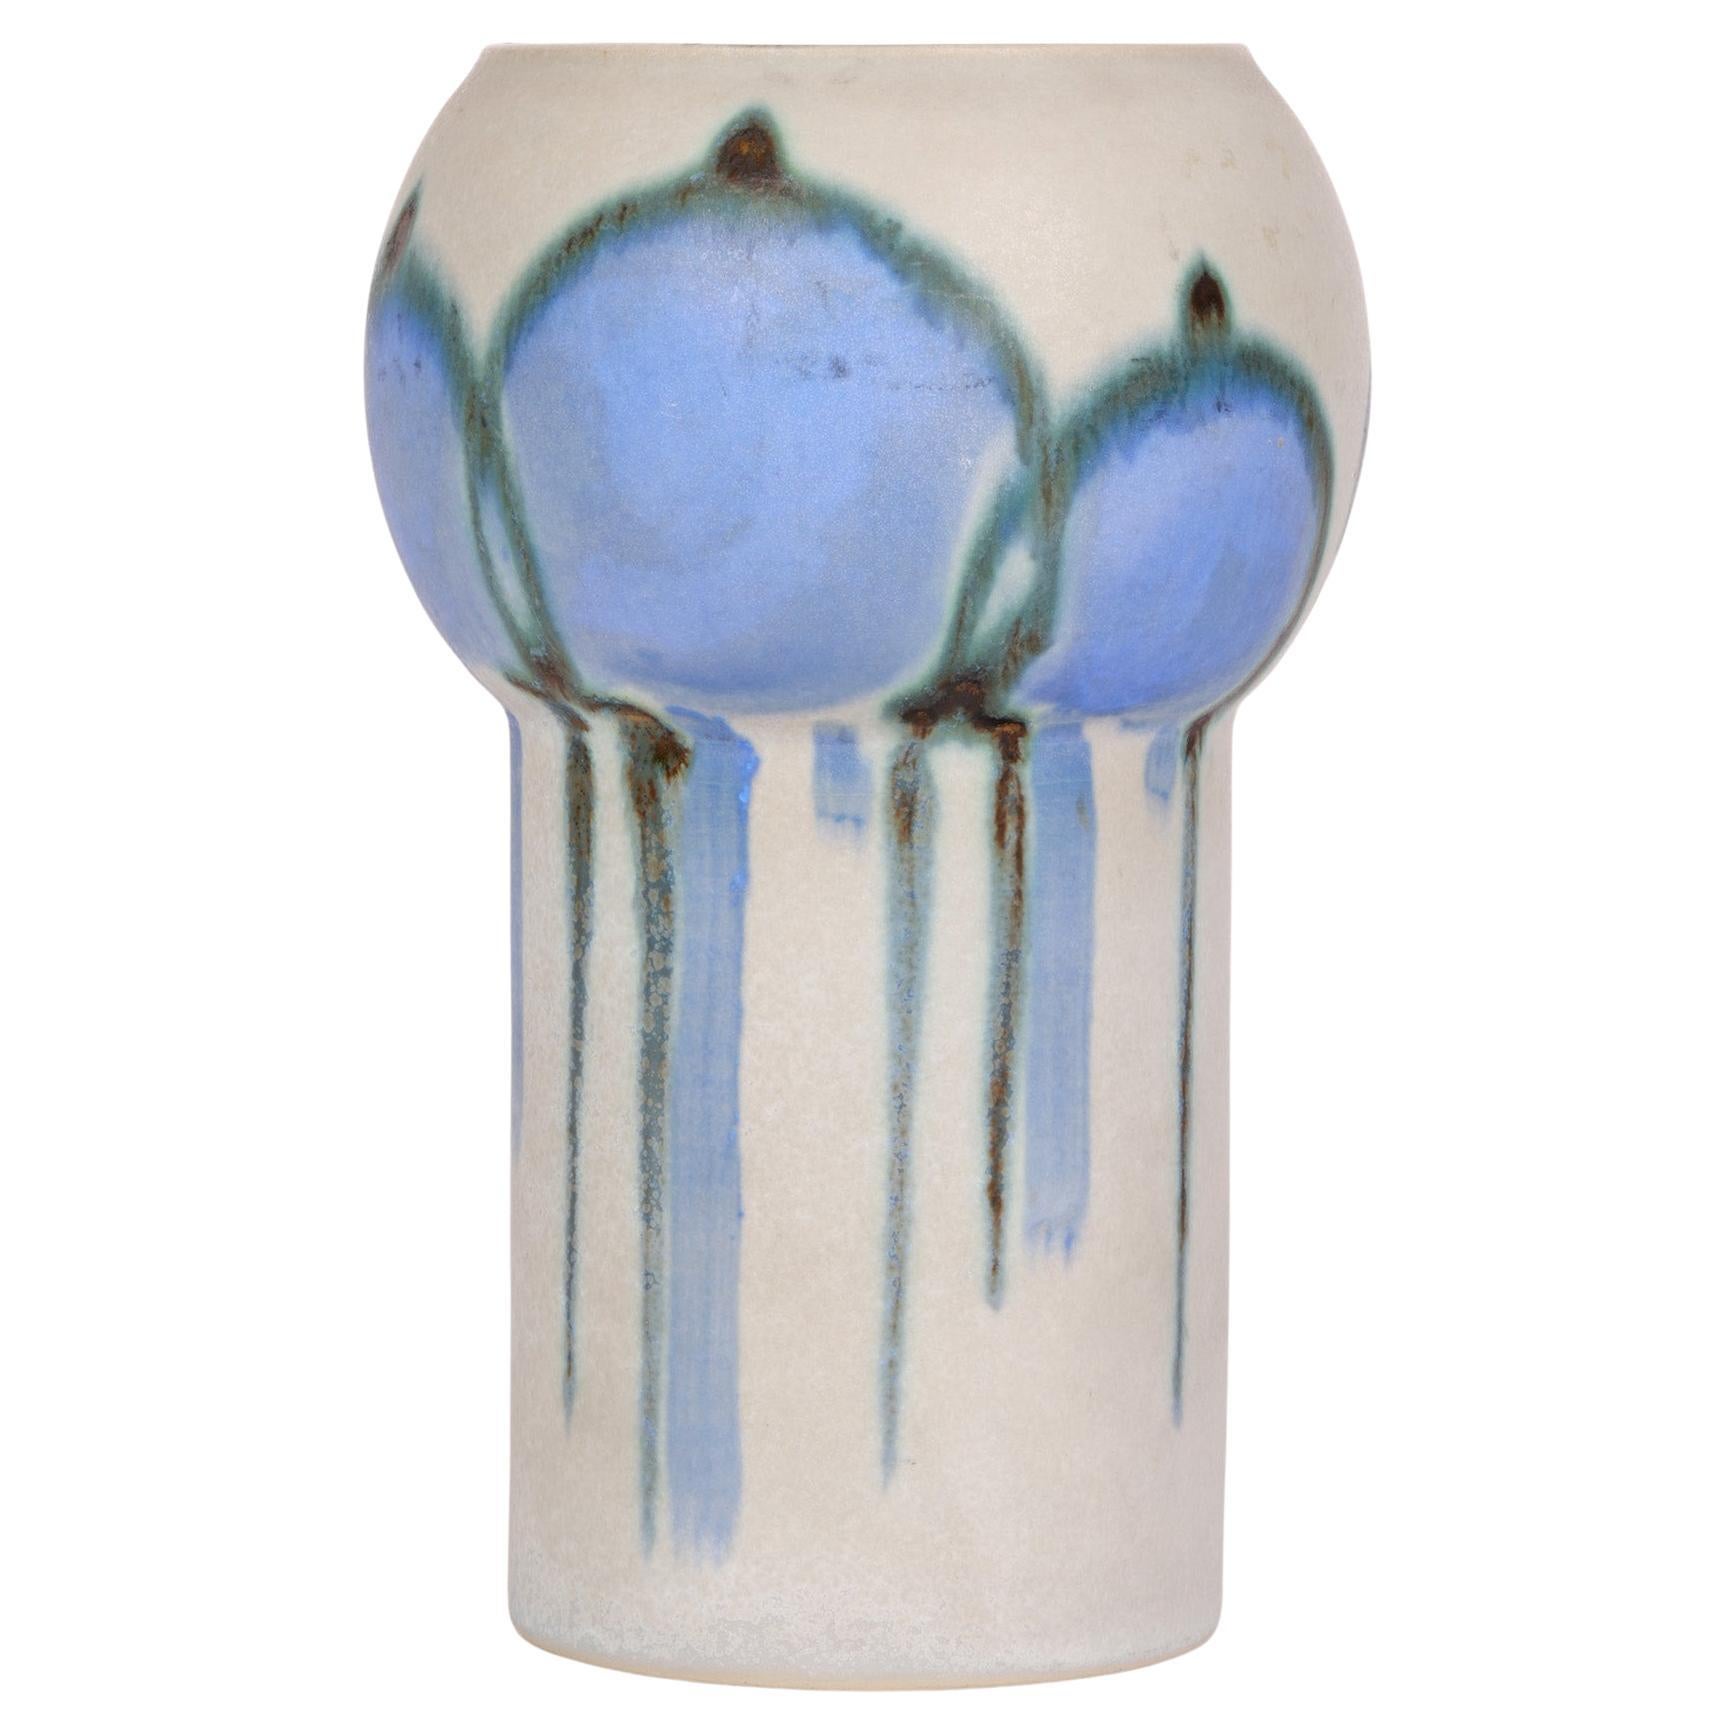 Drejar Gruppen for Rörstrand Swedish Stylized Modern Ceramic Vase, 1973 For Sale